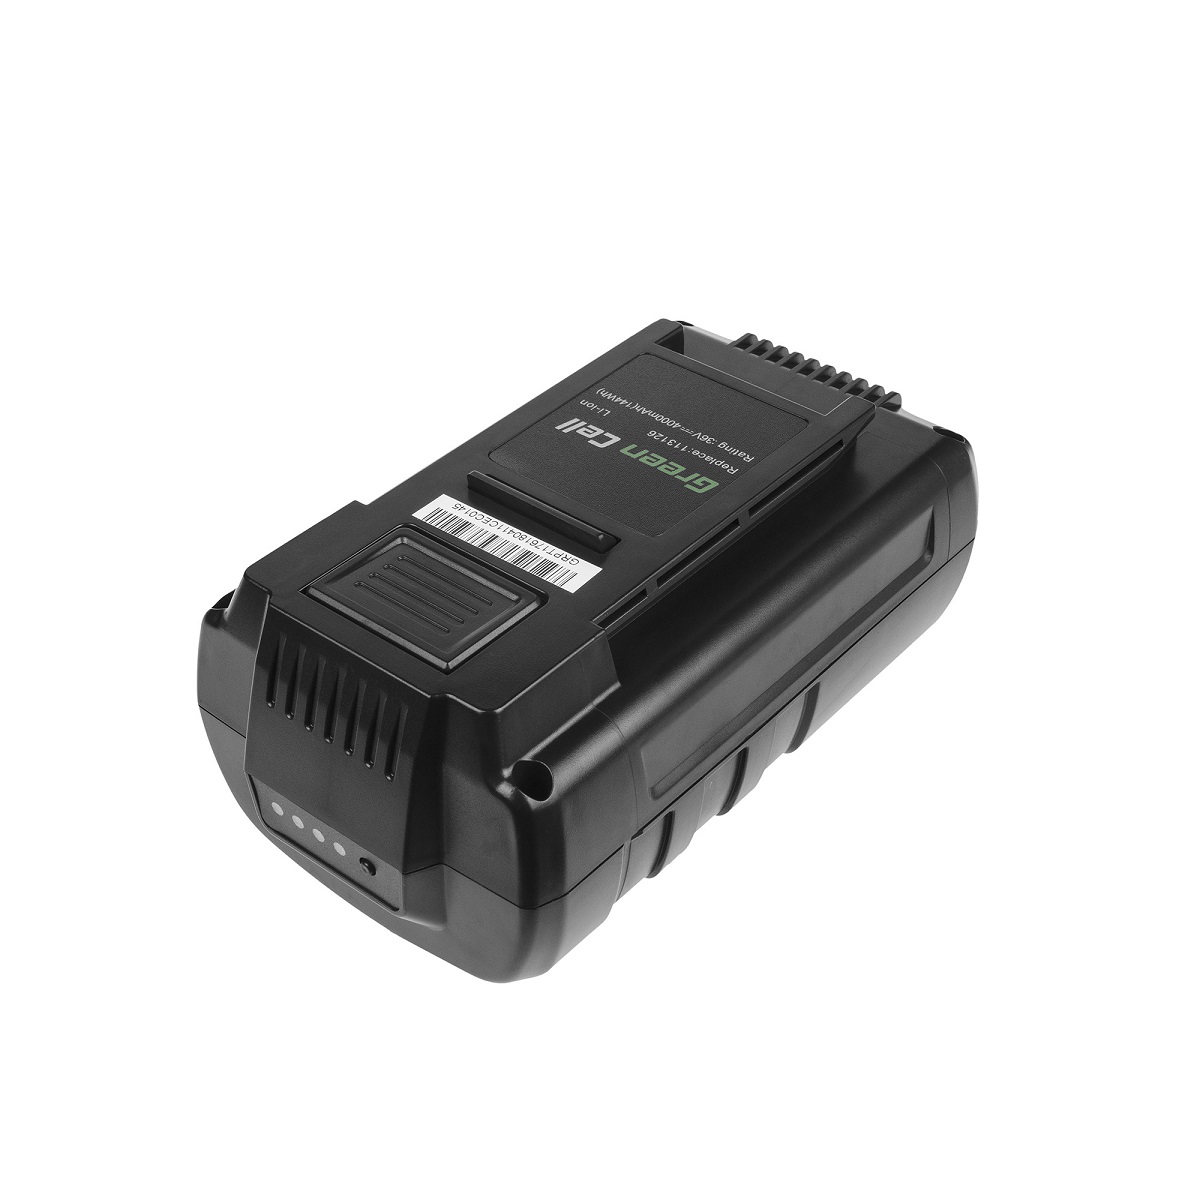 Batterie Energy Flex 36V AL-KO 38.4 LI Comfort GT HT LB 36 Li 36V(compatible)